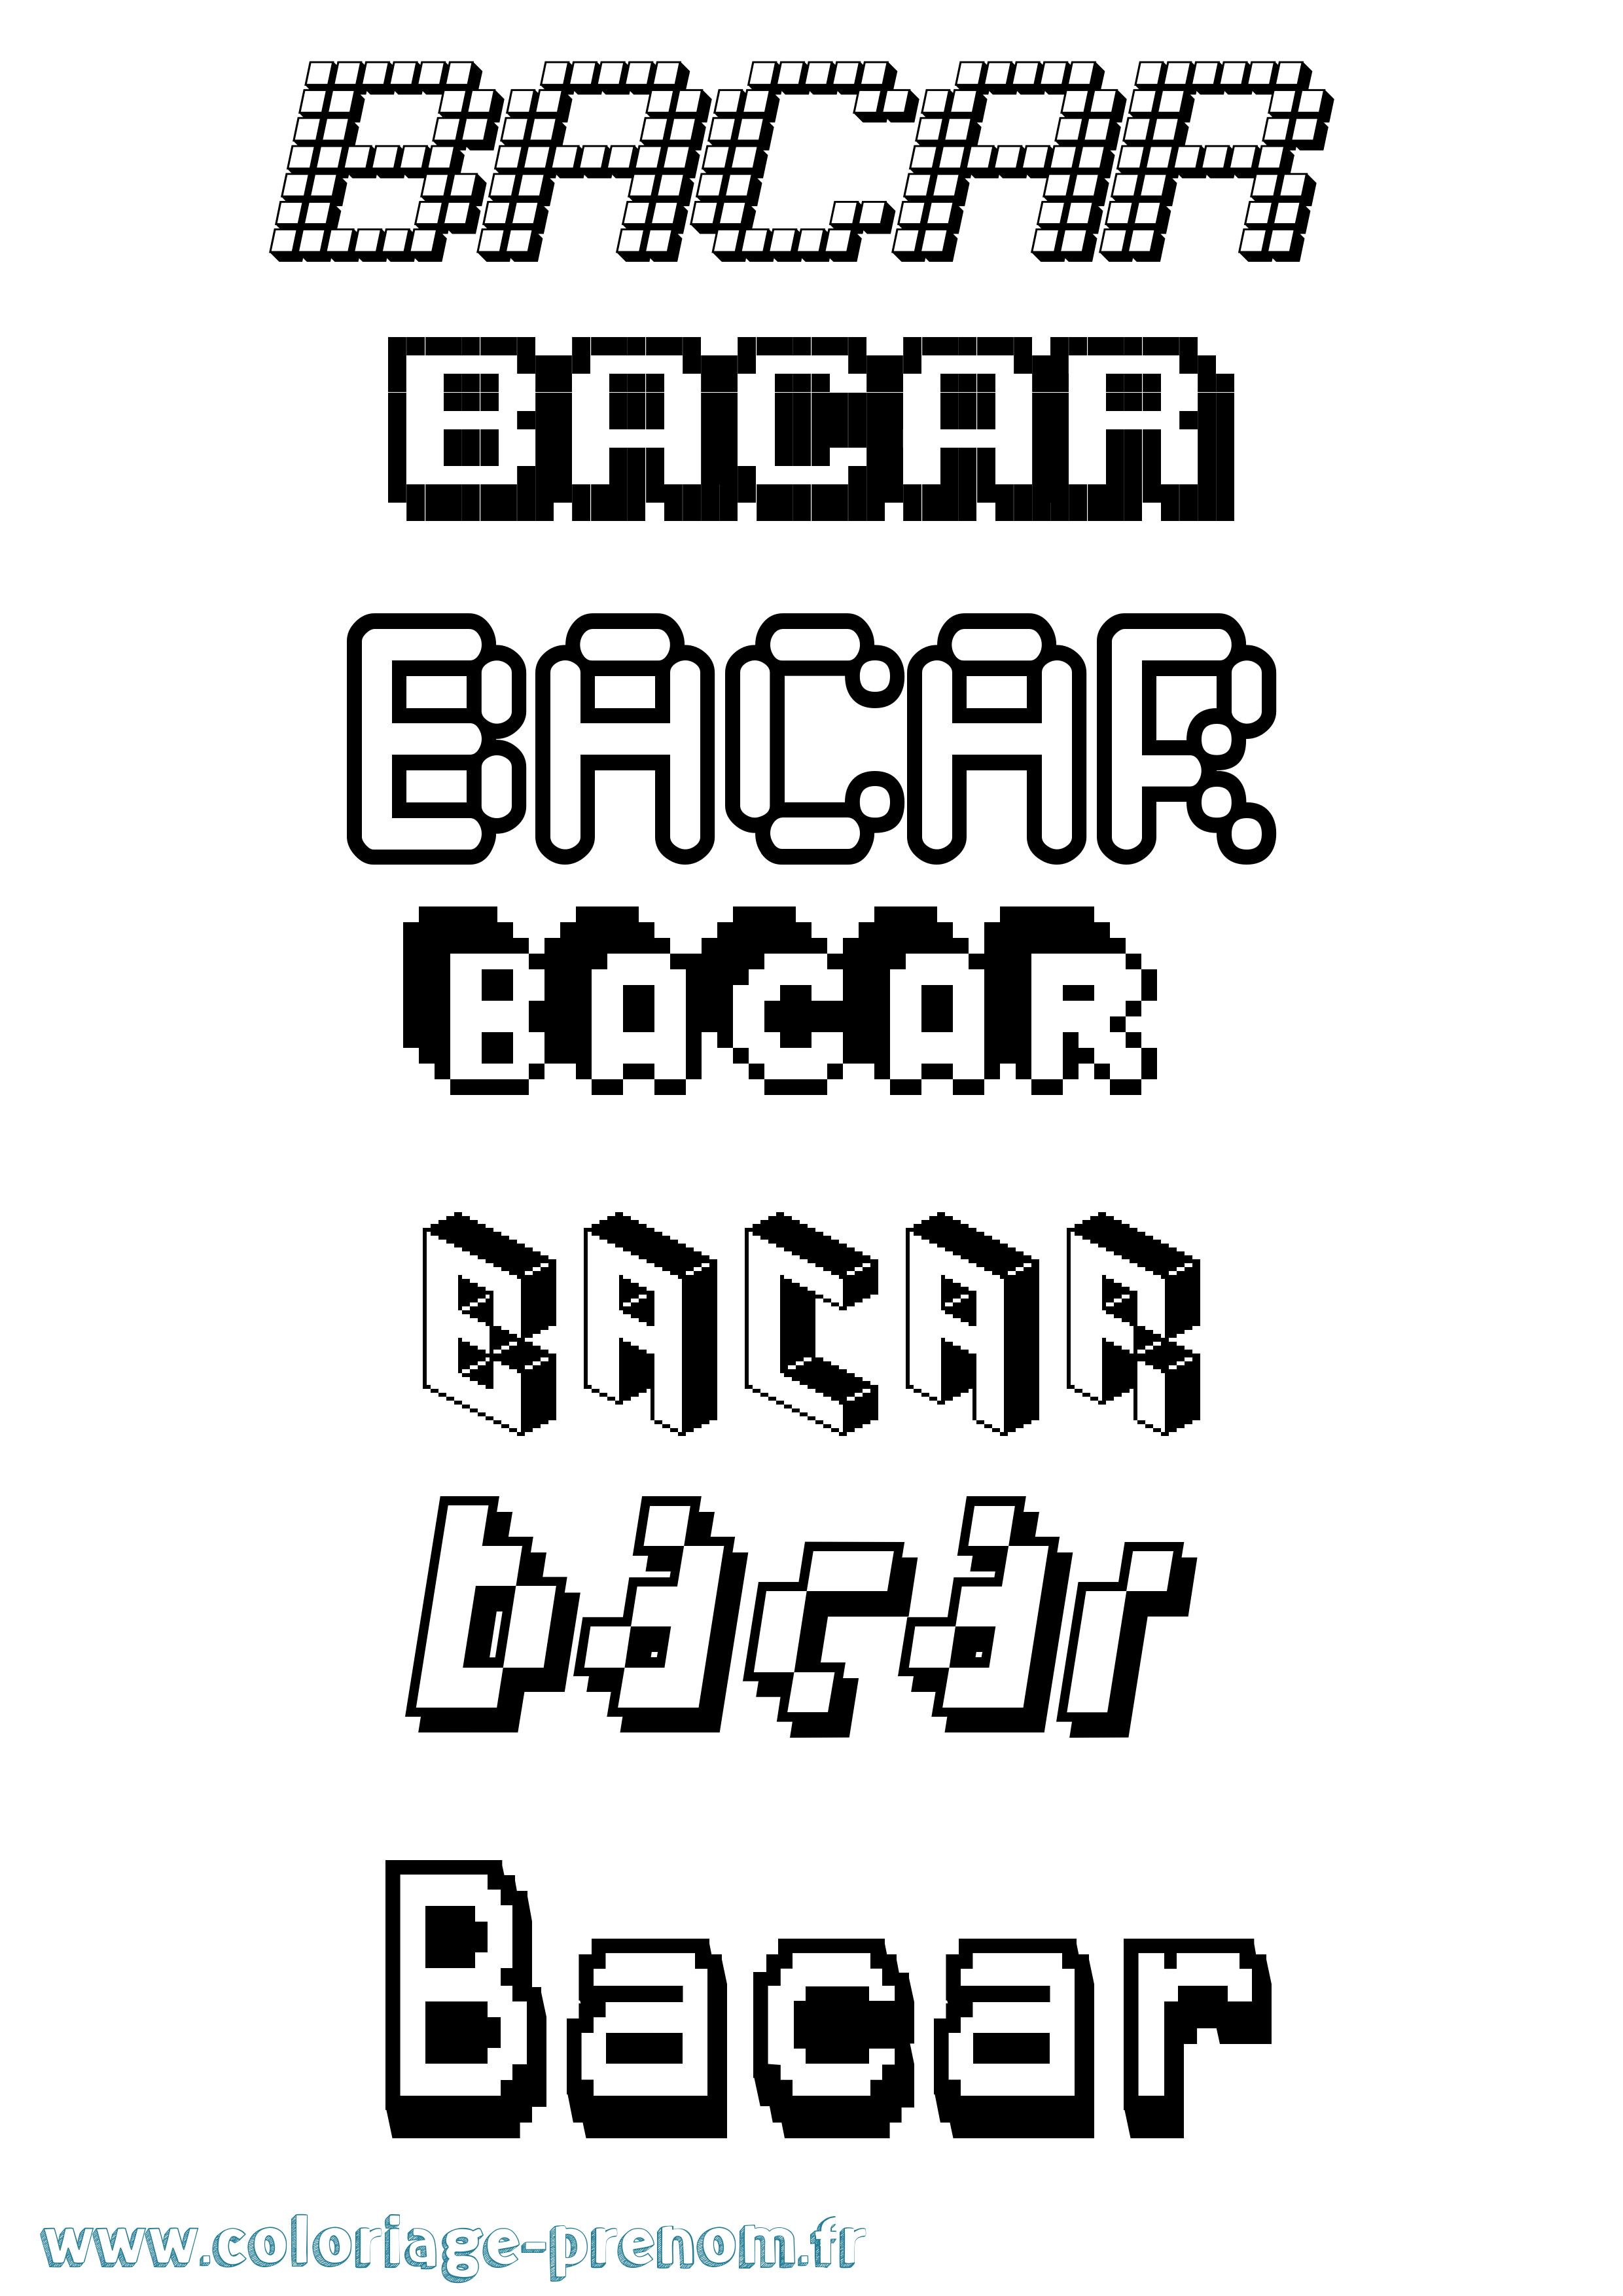 Coloriage prénom Bacar Pixel